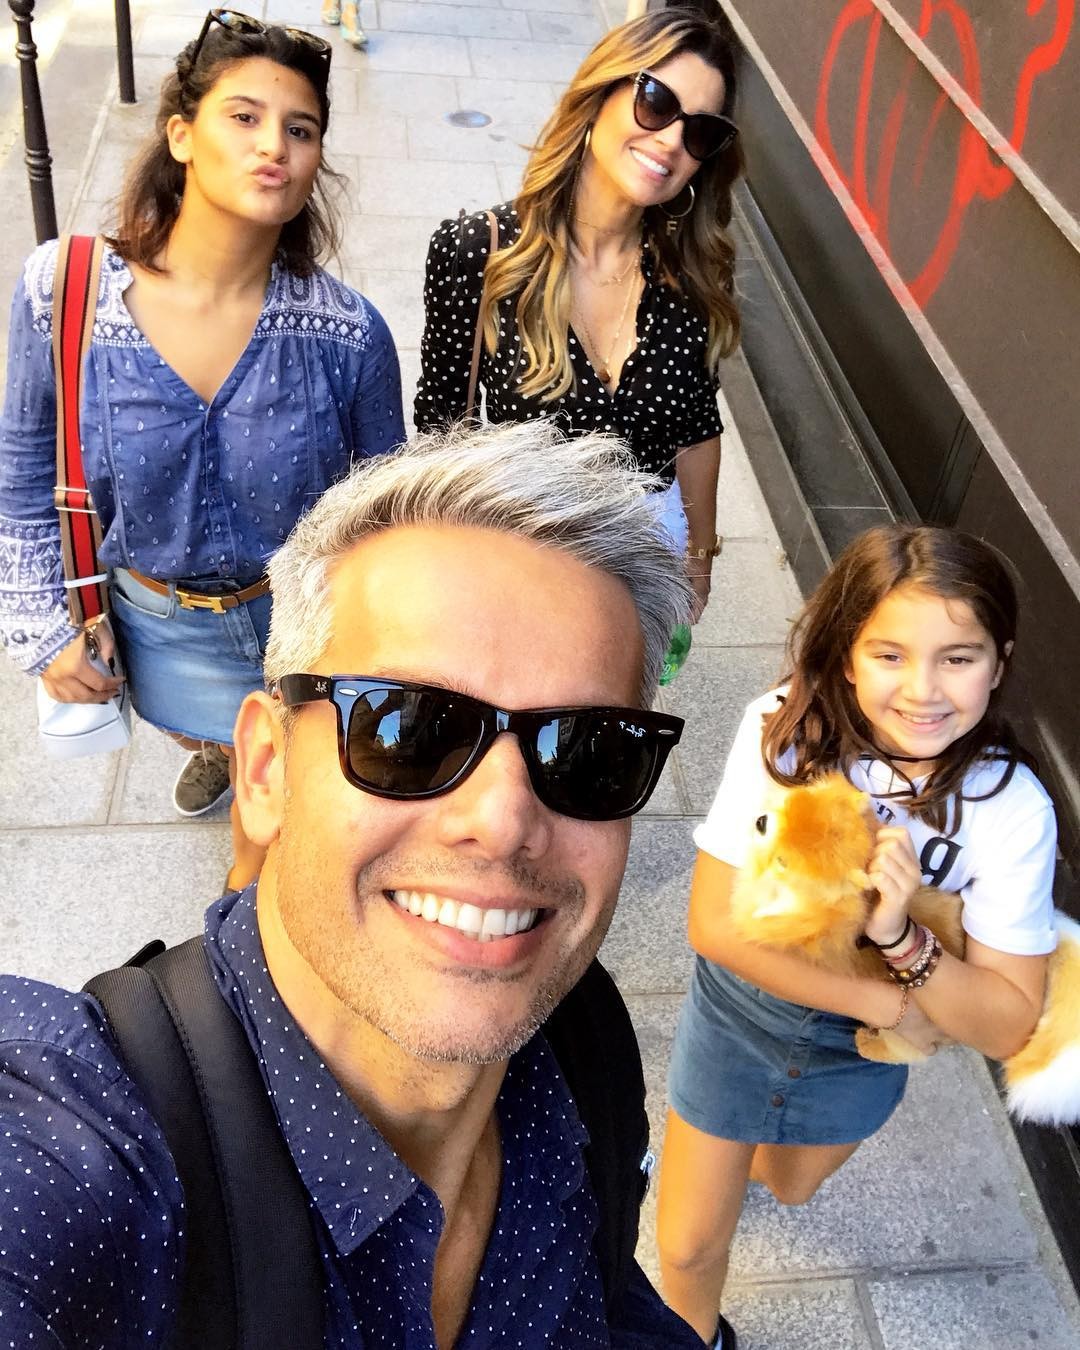 Otaviano Costa e a família (Foto: Reprodução/Instagram)